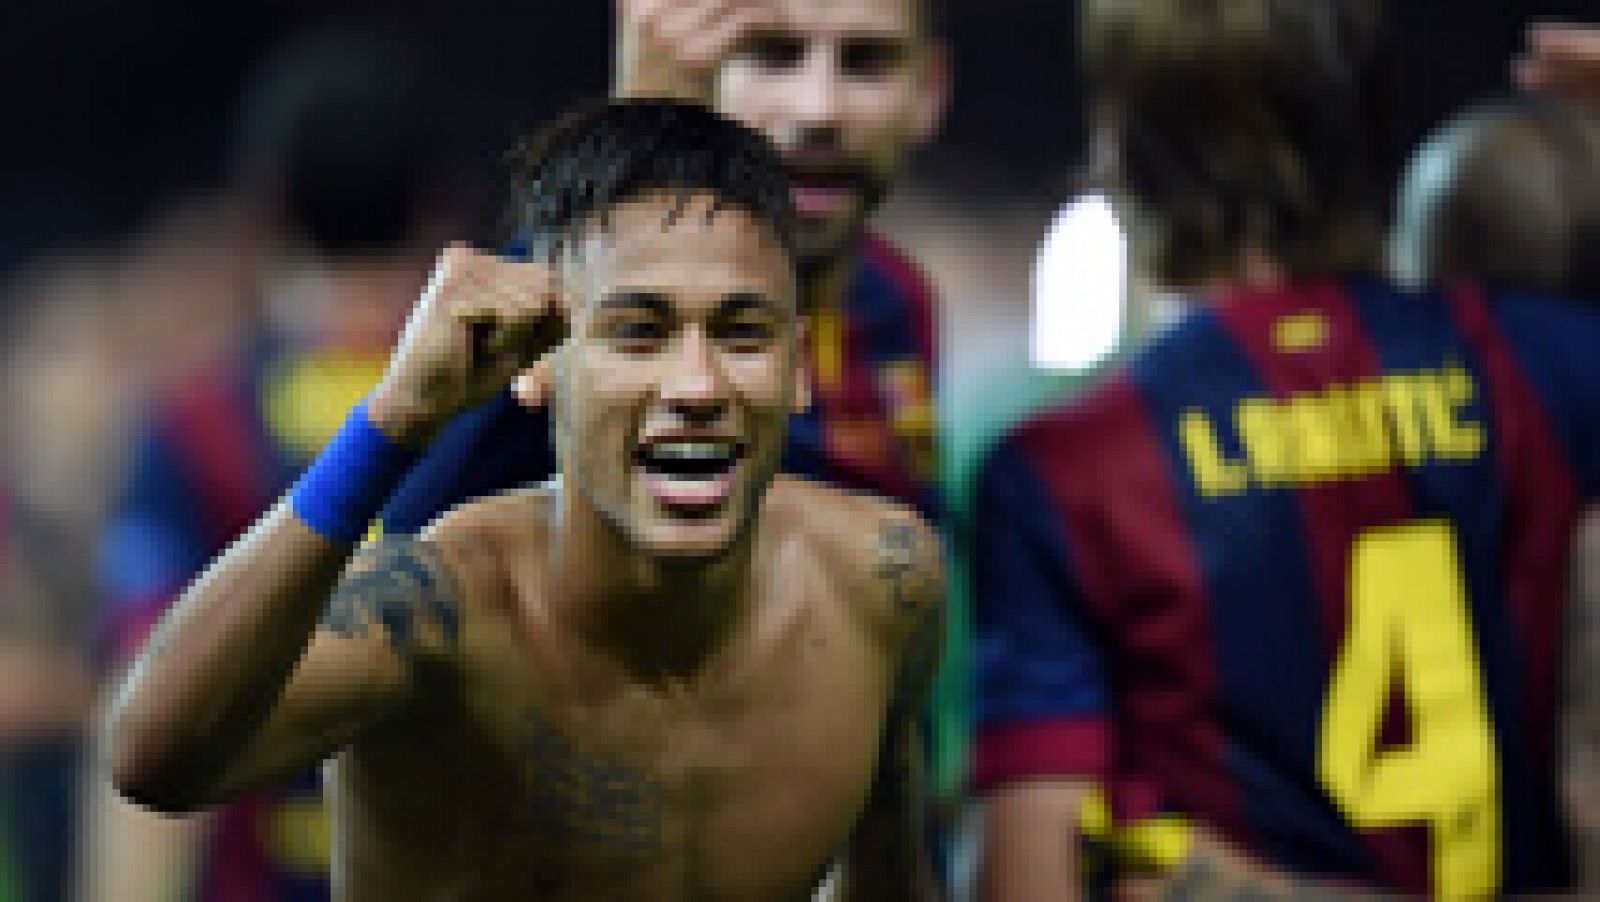 El jugador brasileño del FC Barcelona Neymar ha marcado el 1-3 en el minuto 97 de juego, cerrando un resultado que supone el segundo triplete del Barça y su quinta Champions League.